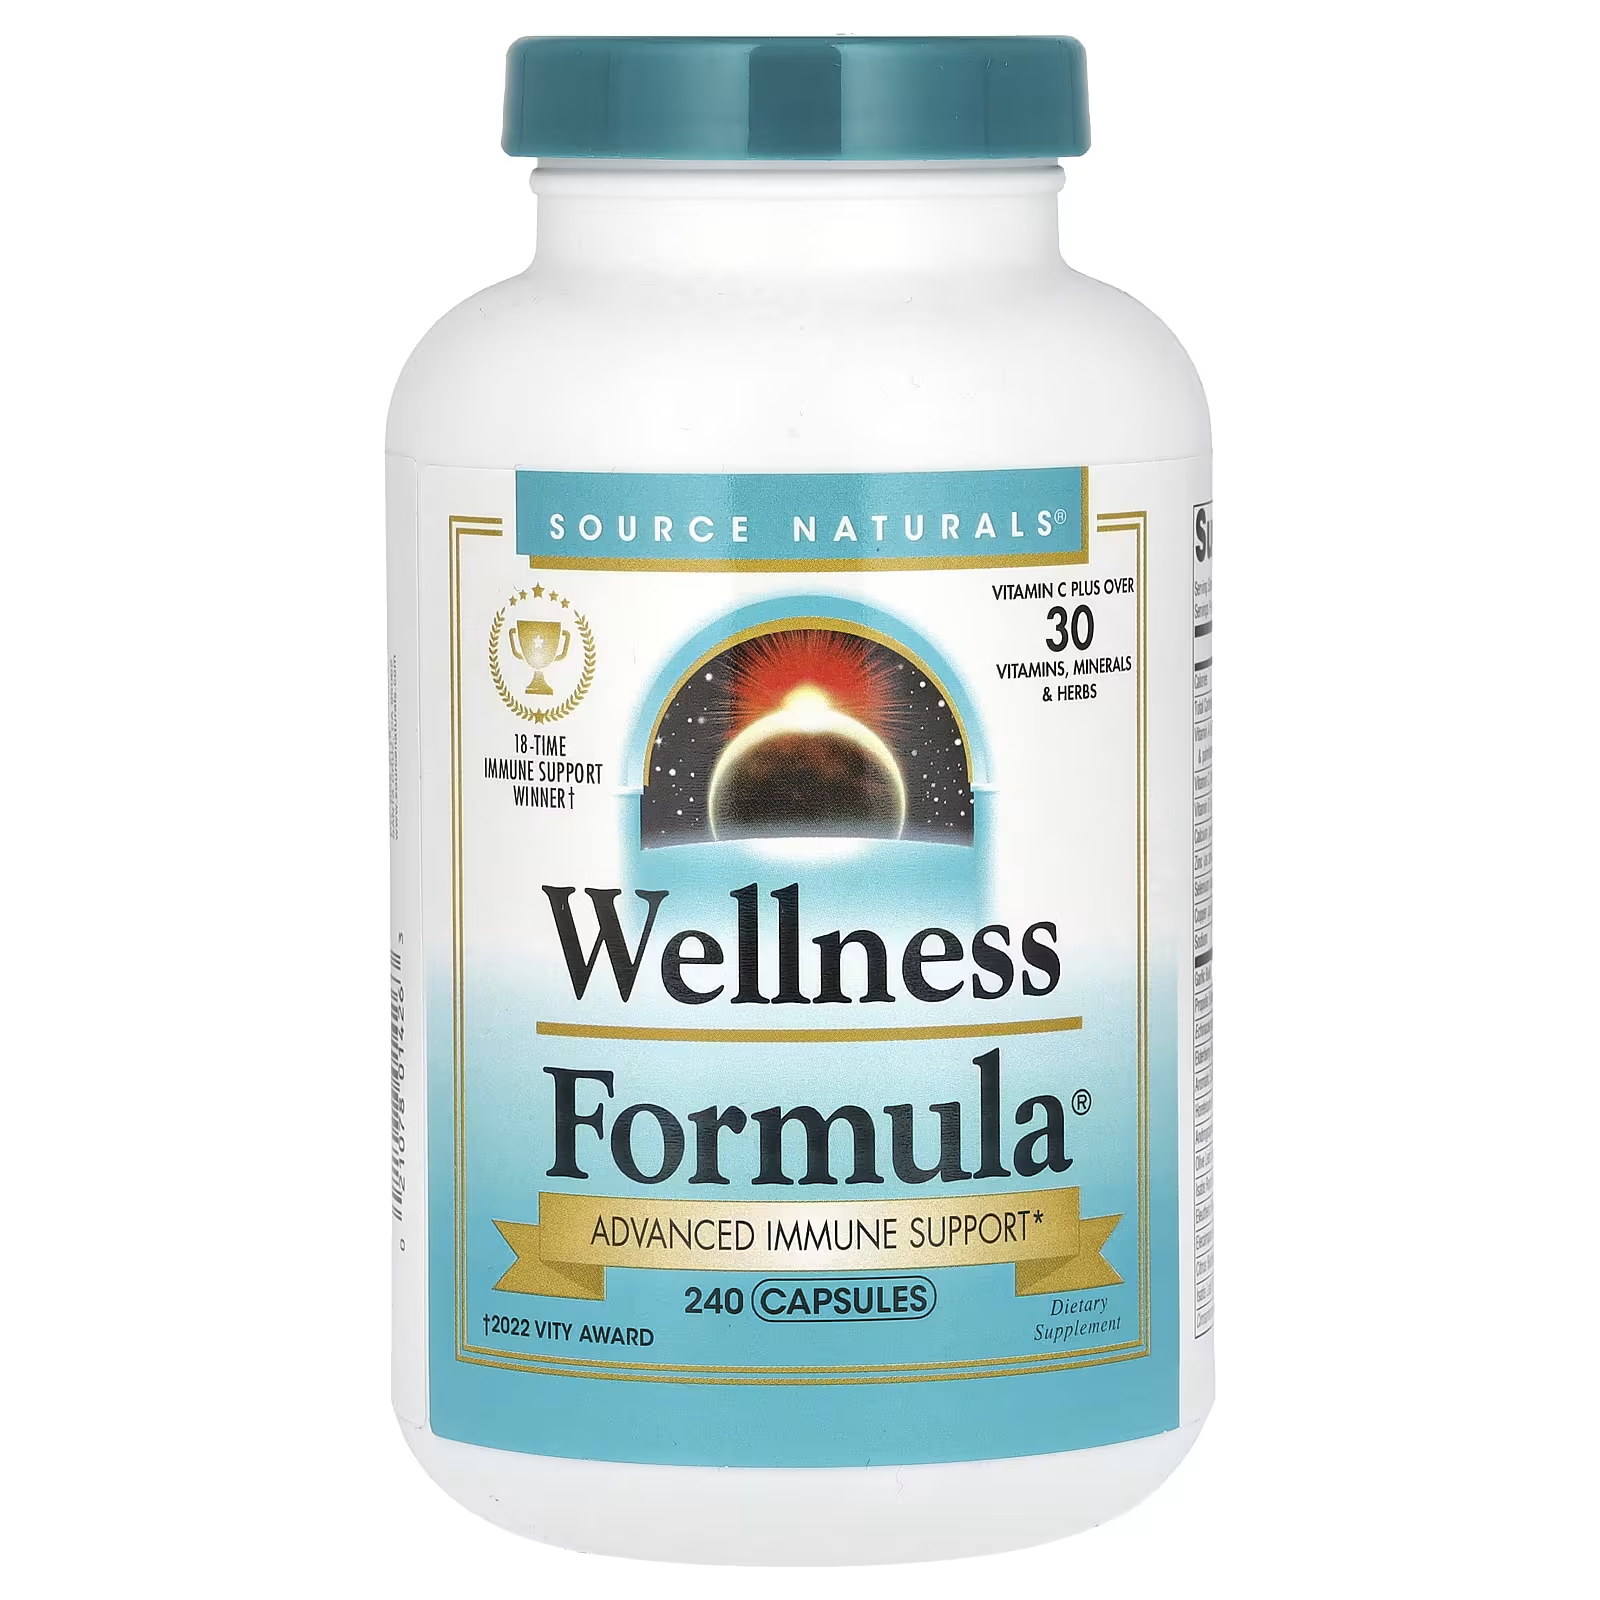 Source Naturals Wellness Formula Advanced Immune Support 240 капсул source naturals wellness formula ежедневная иммунная поддержка 240 капсул